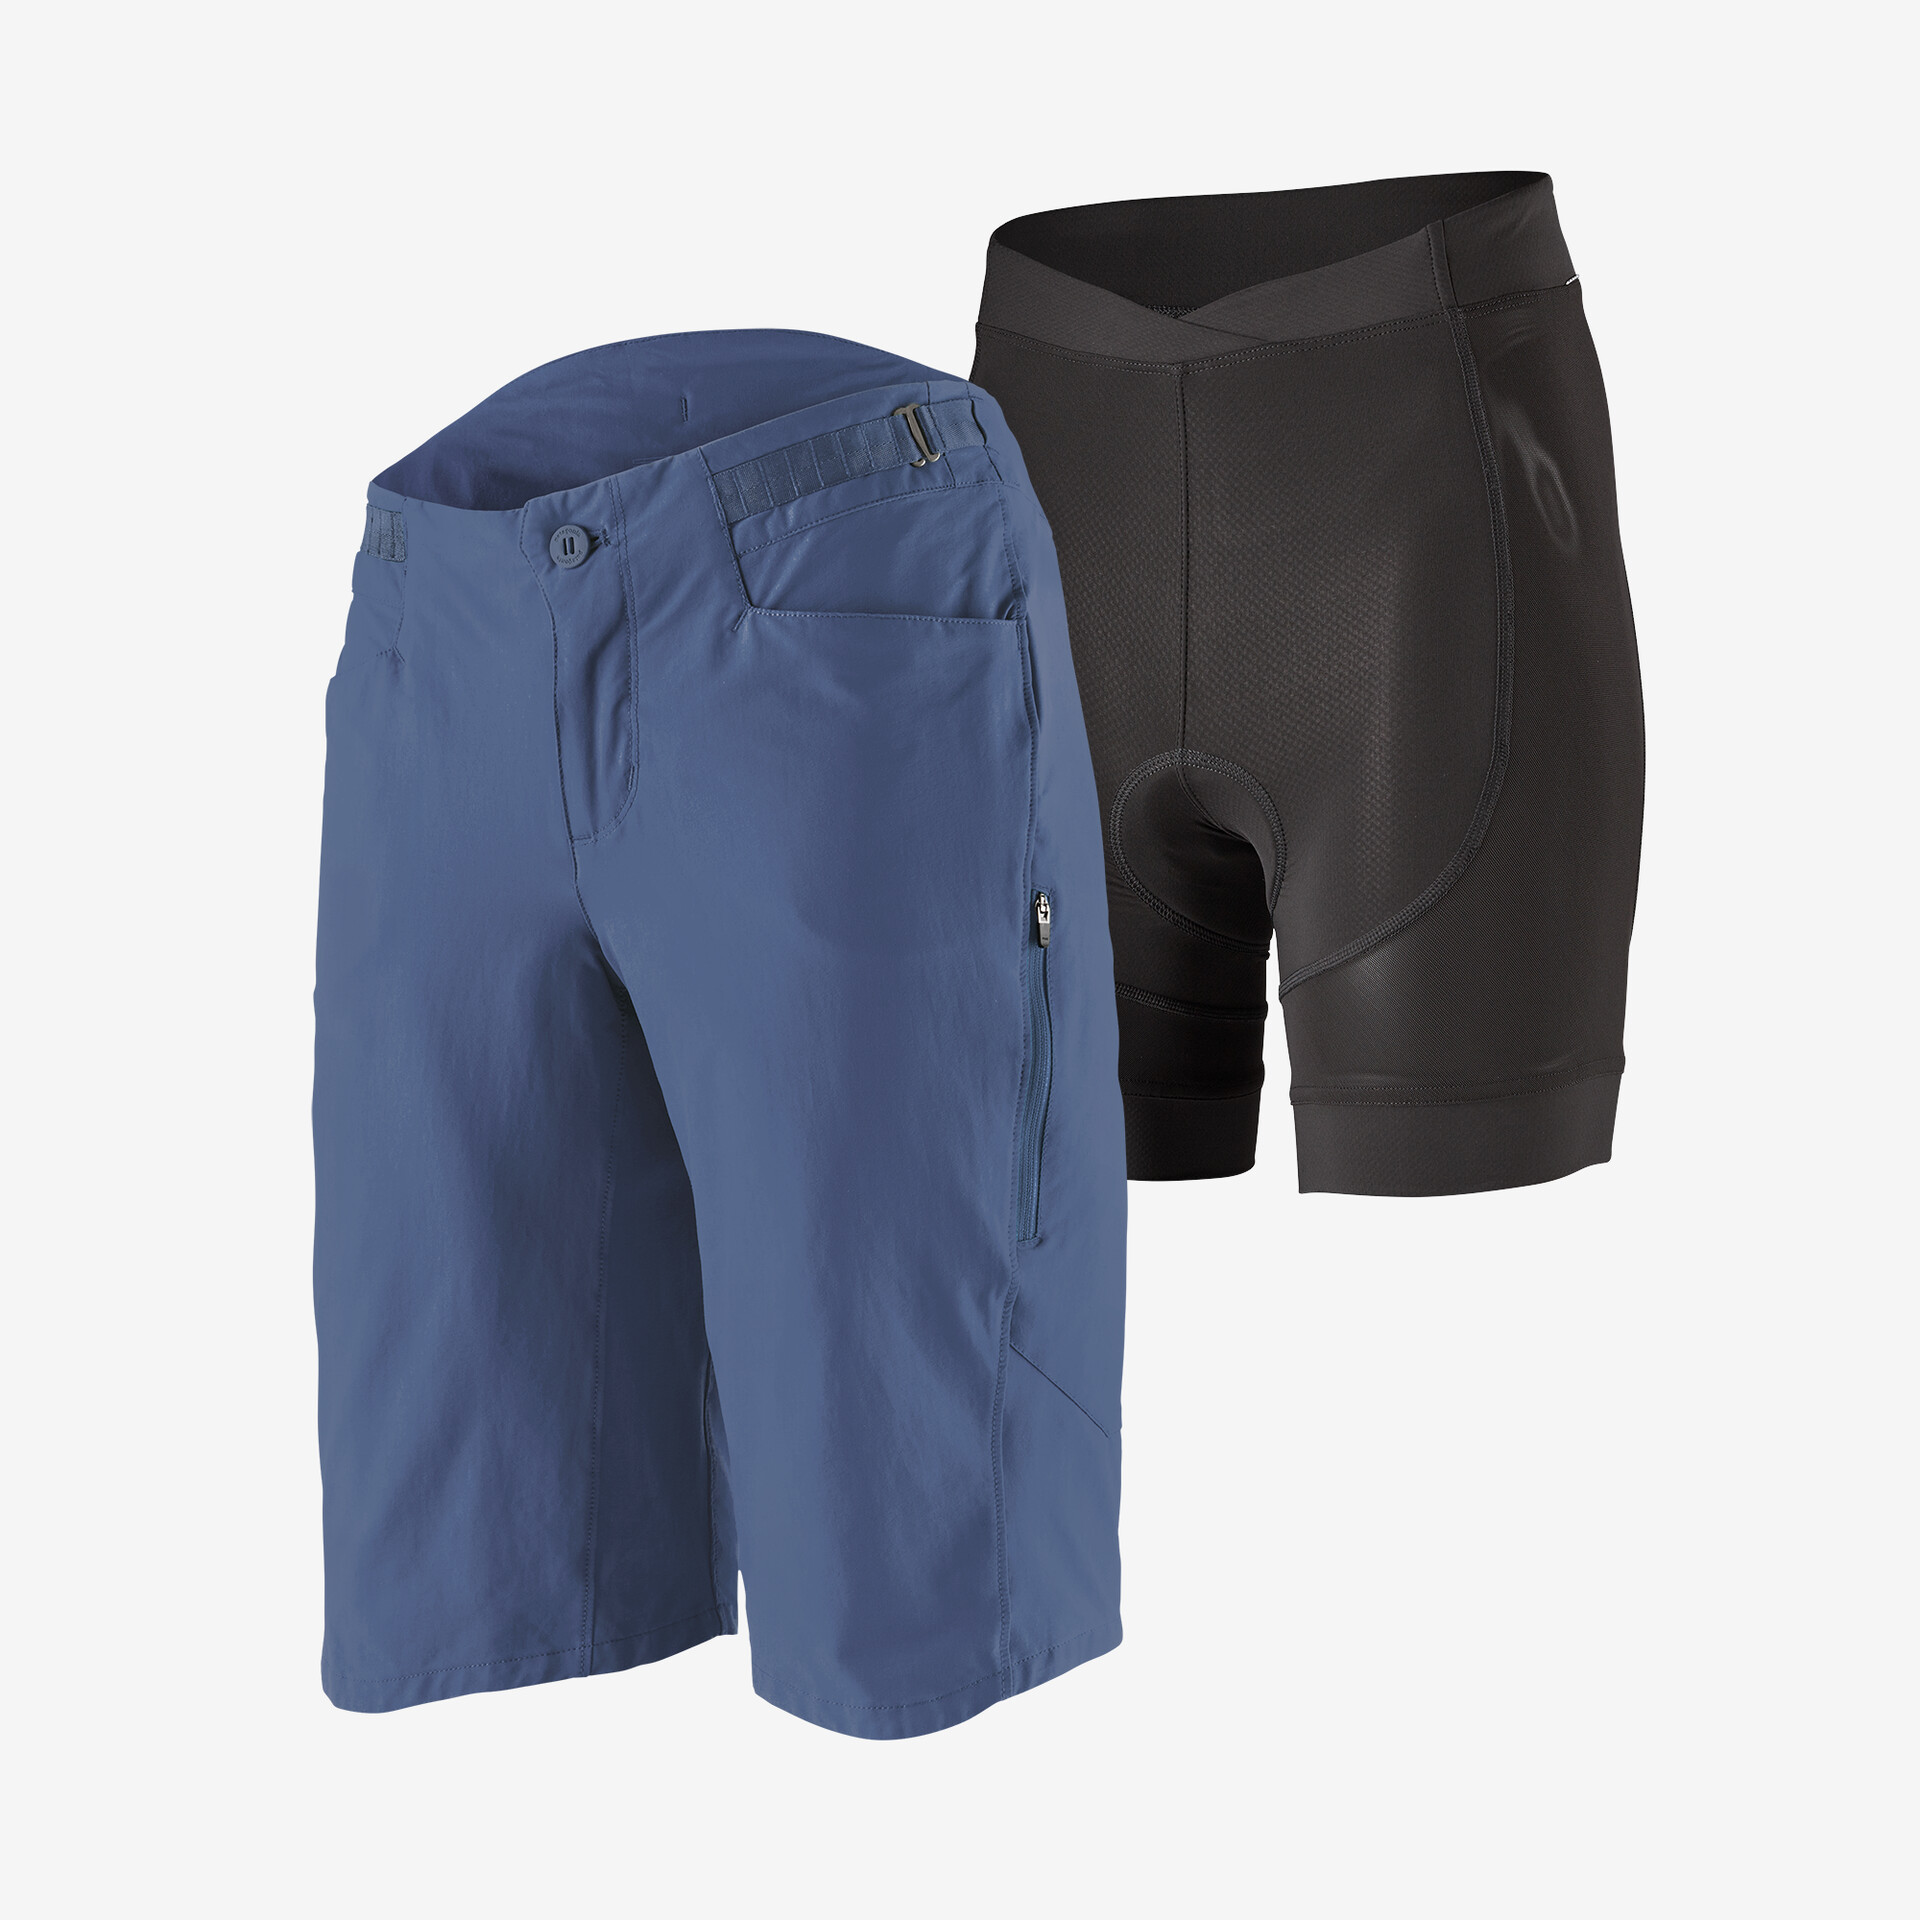 Женские велосипедные шорты для грязи, 12 дюймов Patagonia, синий шорты велосипедные мужские светоотражающие дышащие свободные штаны для горных велосипедов короткие брюки для мотокросса